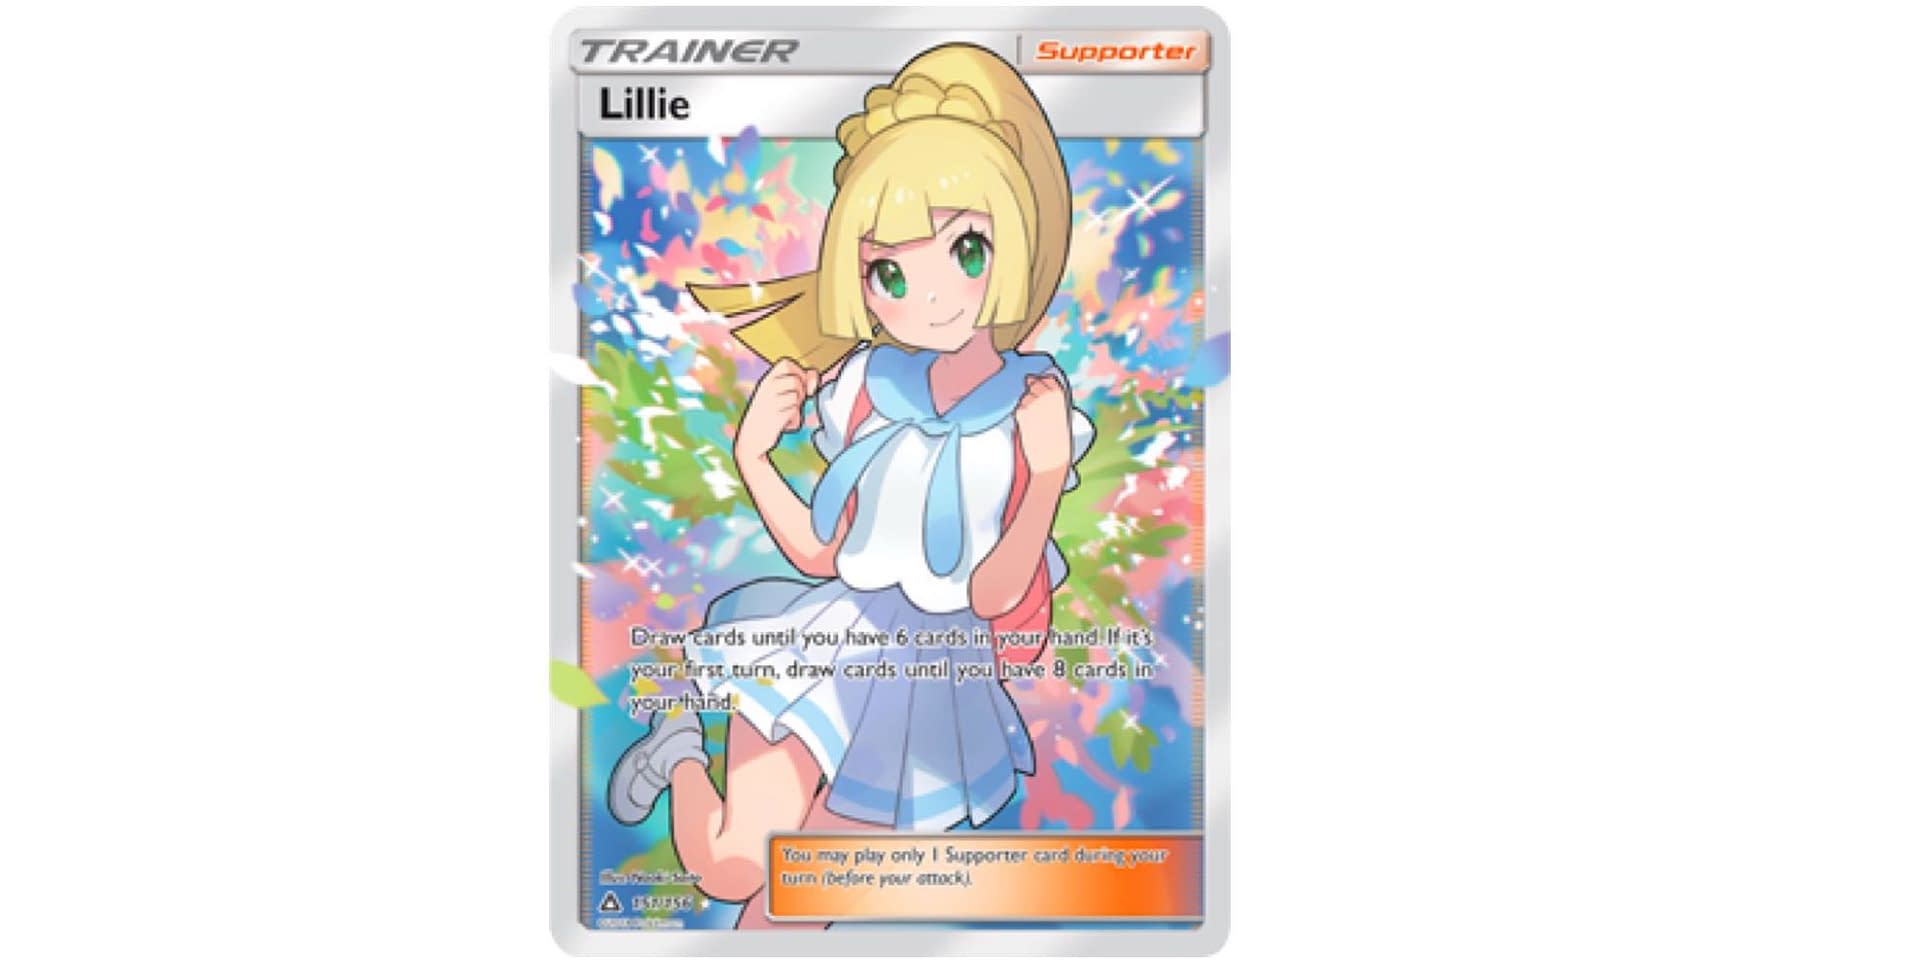 Palkia GX - Ultra Prism - Pokemon Card Review - COTD 